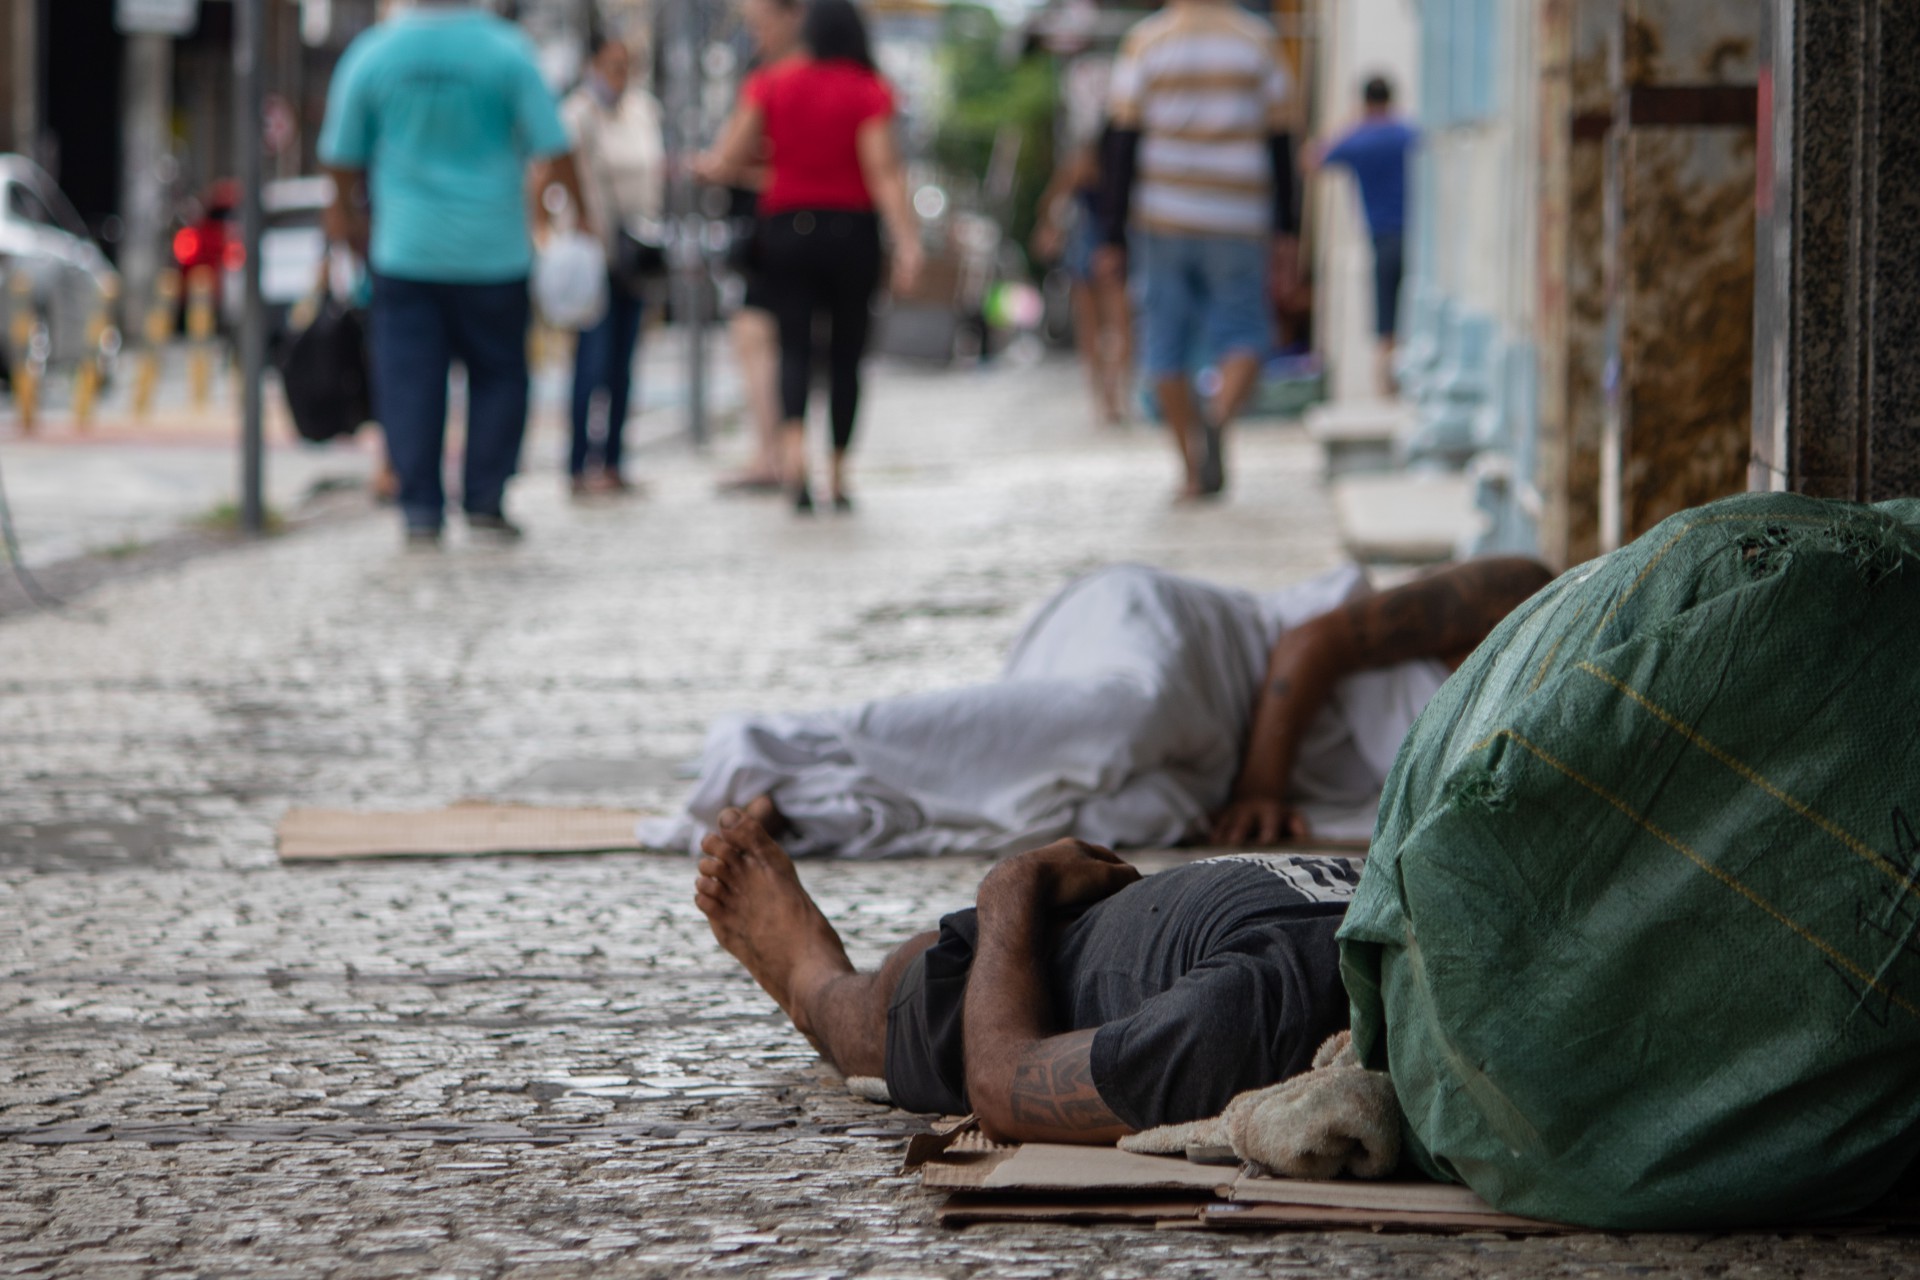 FORTALEZA, CEARÁ, BRASIL: Extrema pobreza entre crianças, adolescentes e pessoas em situação de rua (Foto: Samuel Setubal)